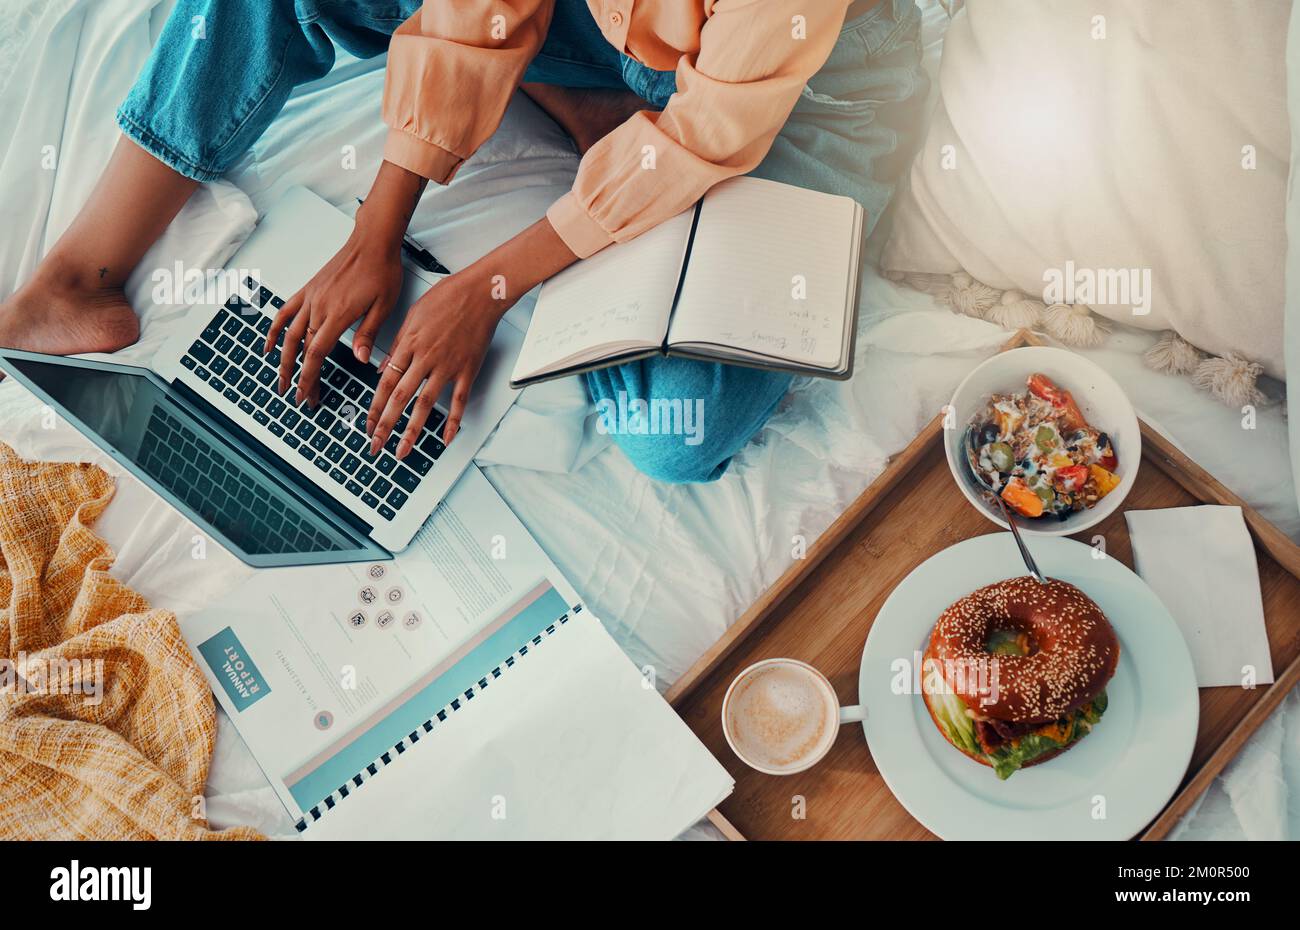 Frühstücks-, Bett- und Laptop-Hände für die Arbeit von zu Hause aus Produktivität, Zeitmanagement und Finanzplanung. Ernährung, Food-Blog und Geschäft Stockfoto